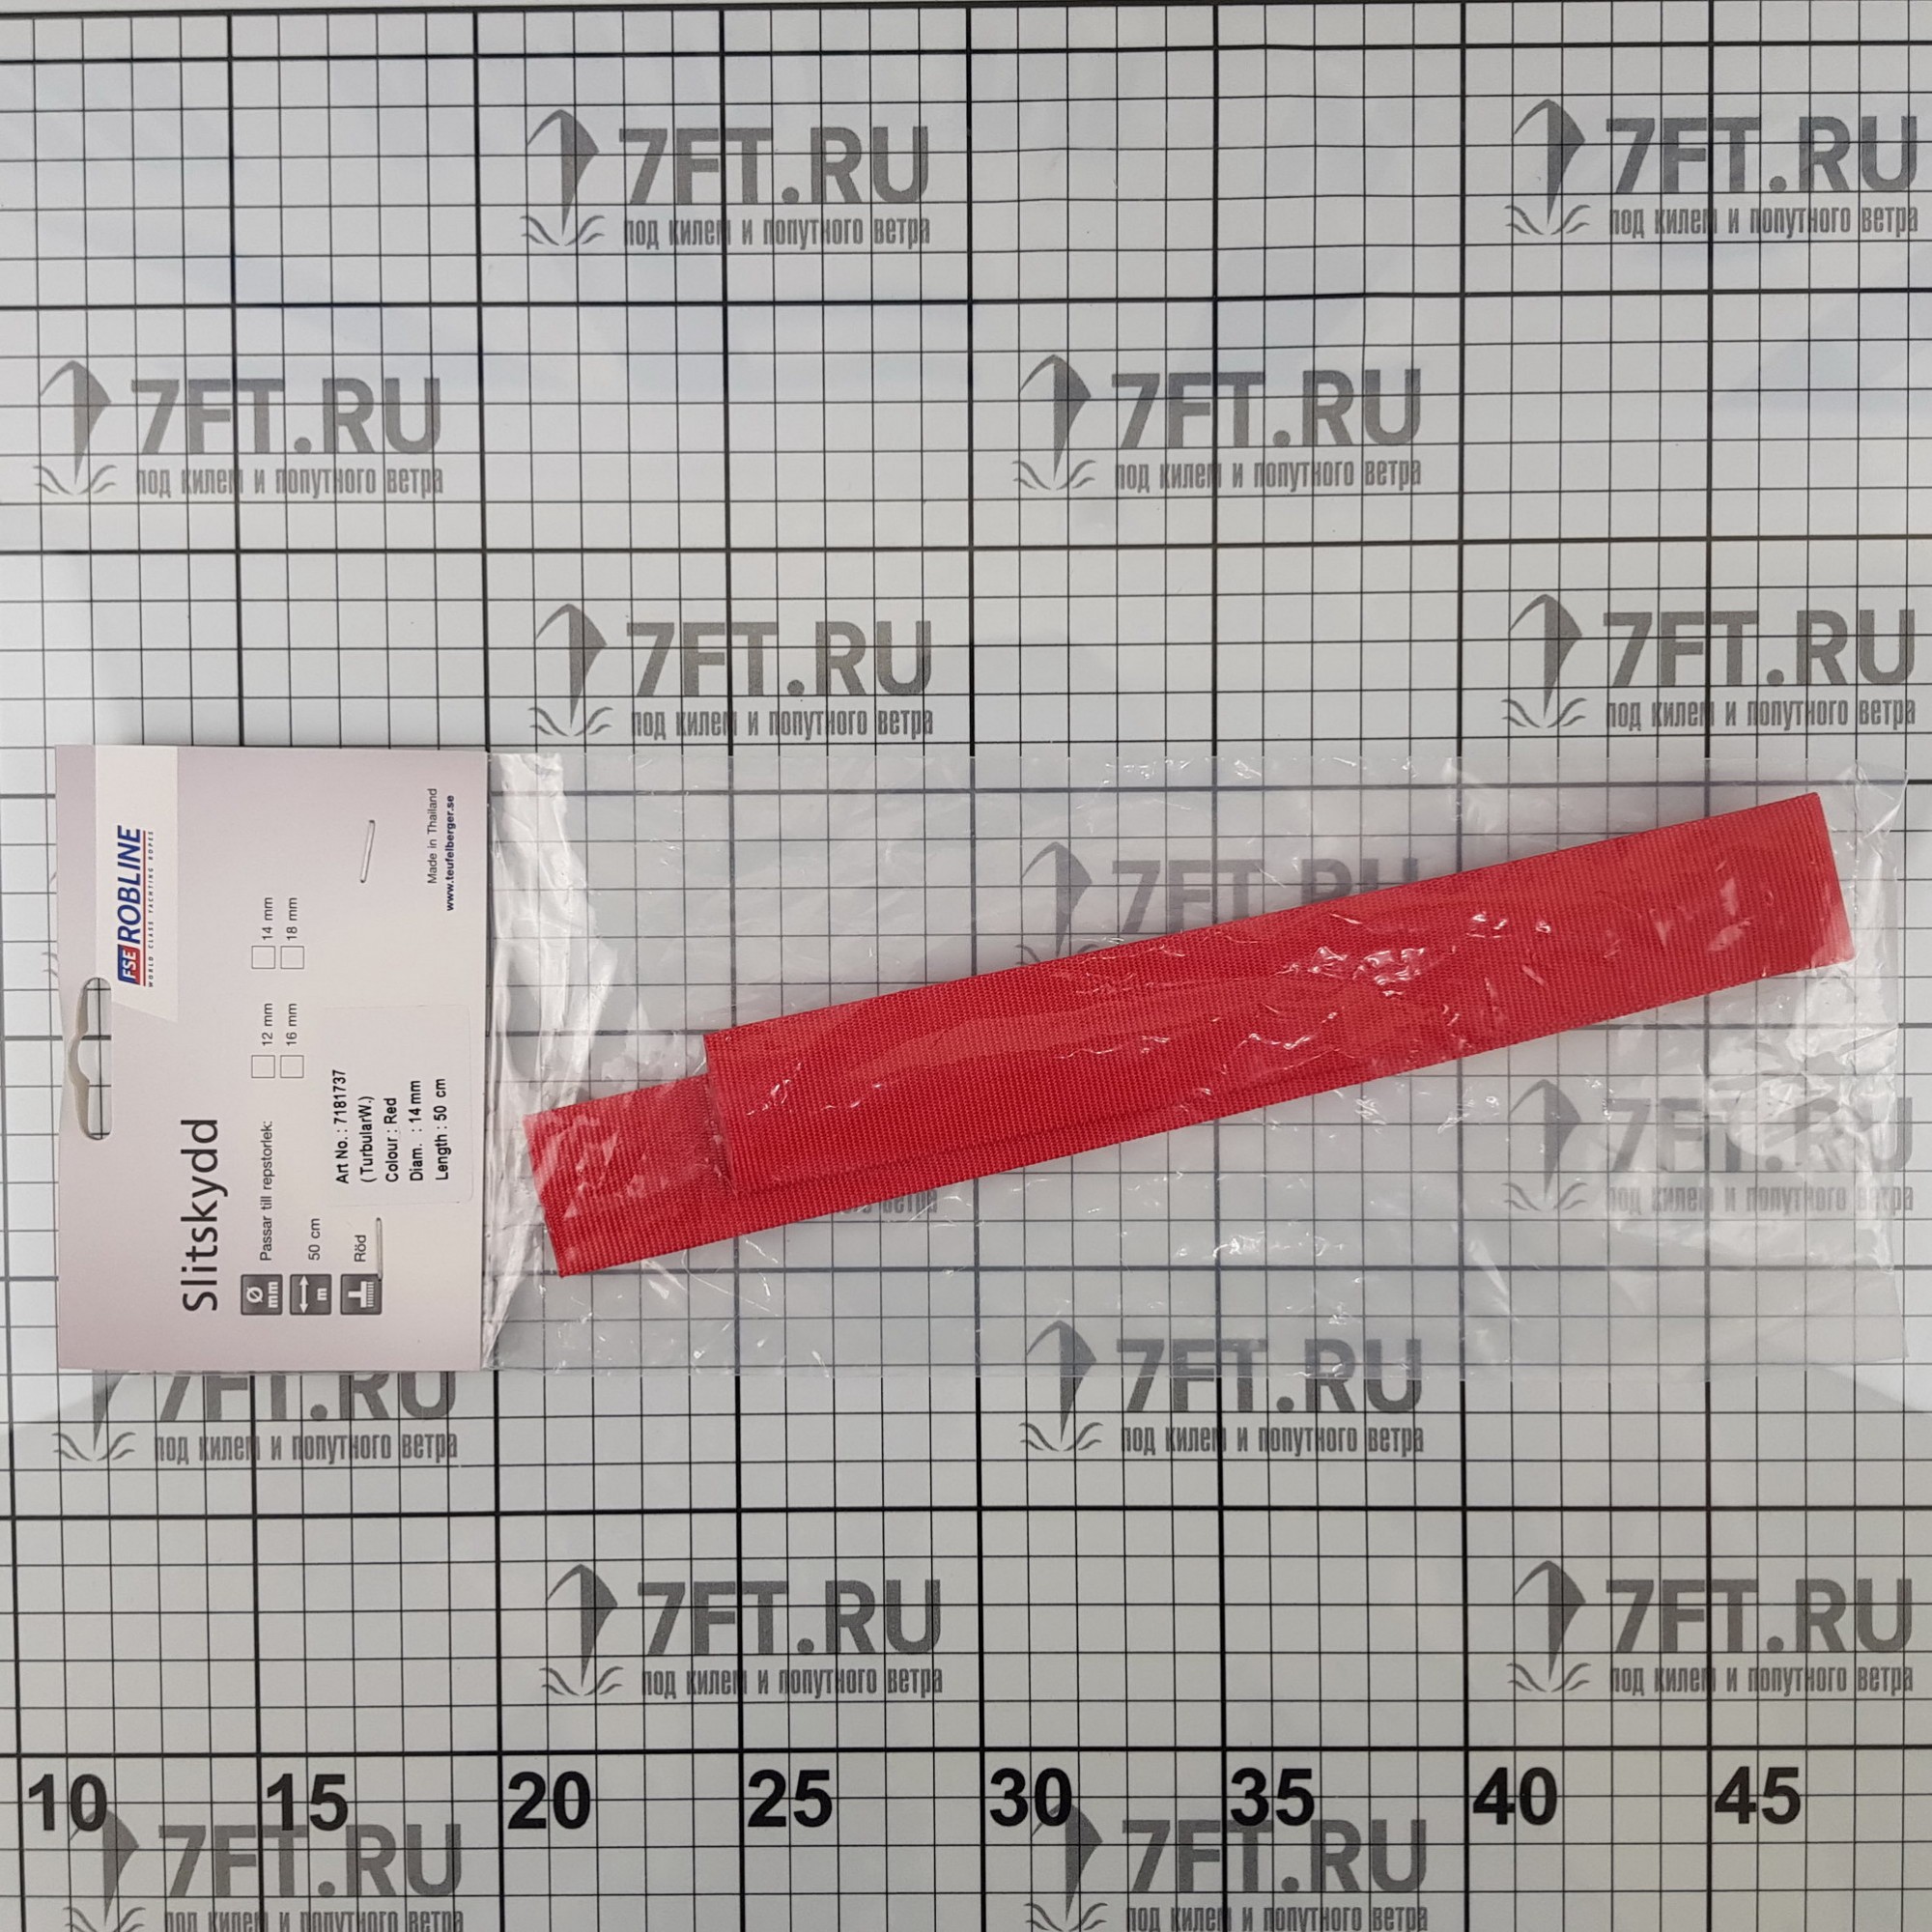 Купить Протектор для троса FSE Robline 7181737 500мм для троса Ø14мм красный 7ft.ru в интернет магазине Семь Футов